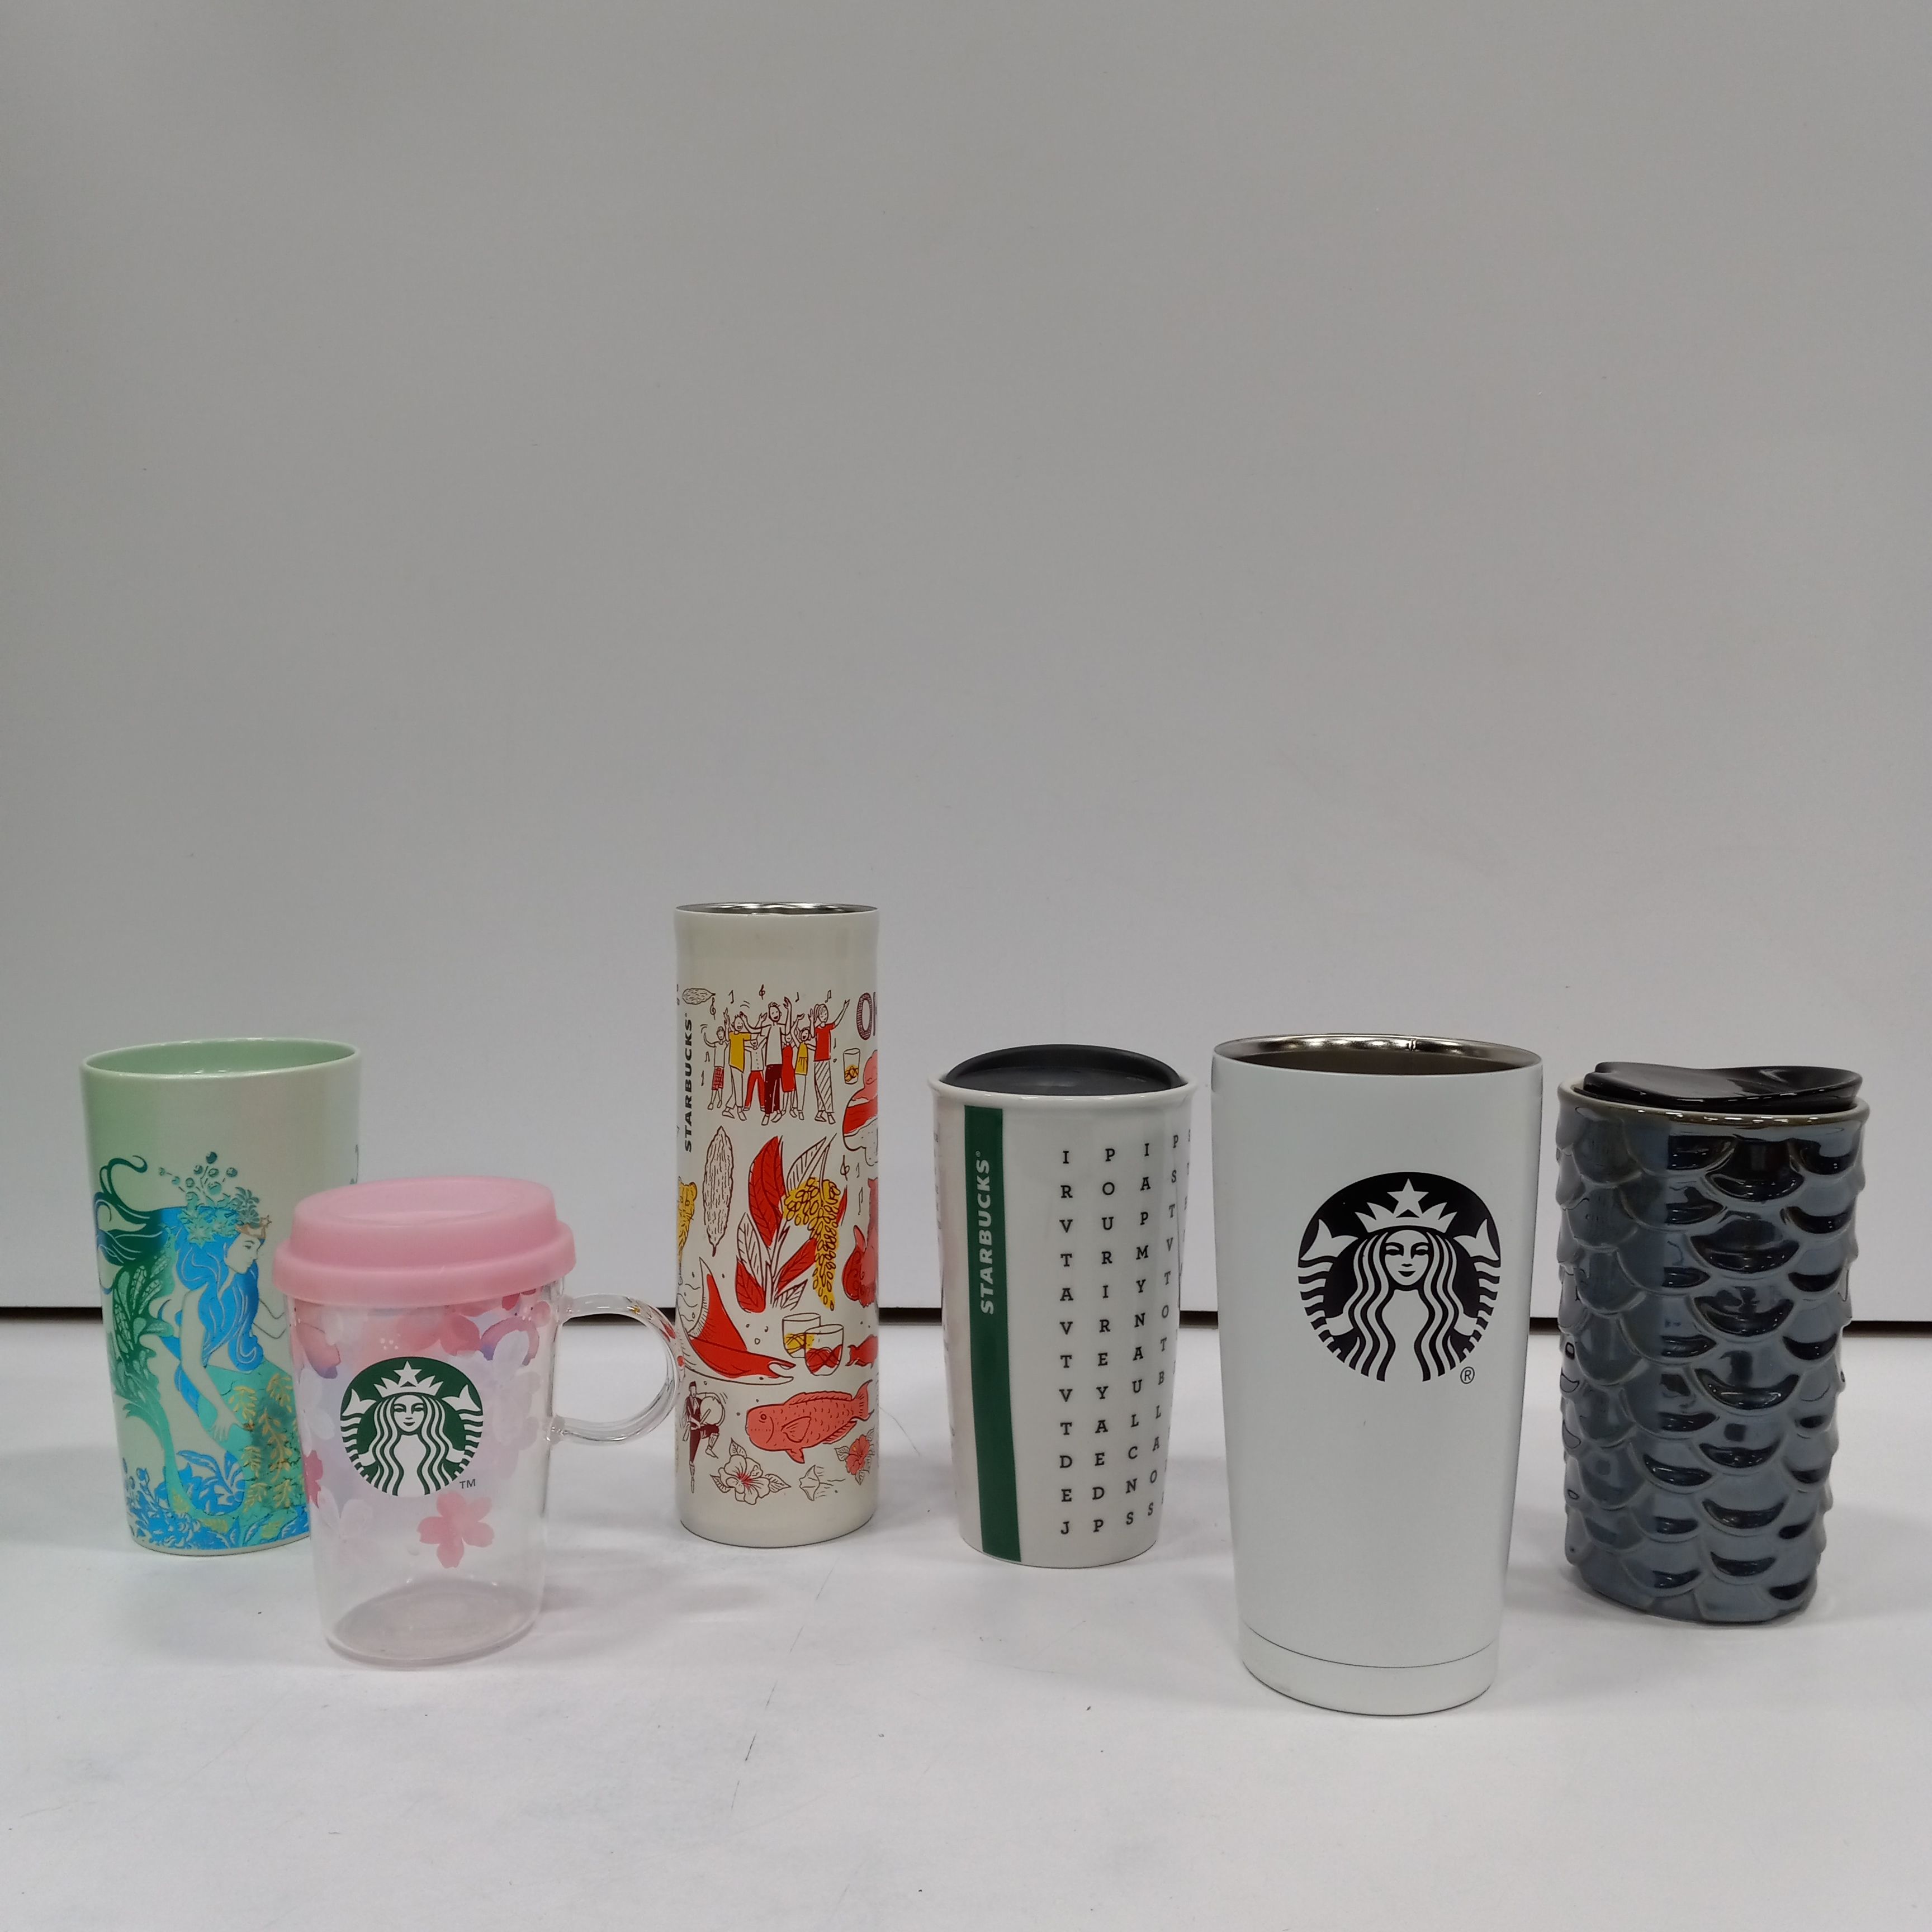 Buy the Bundle of 6 Assorted Starbucks Coffee Mugs